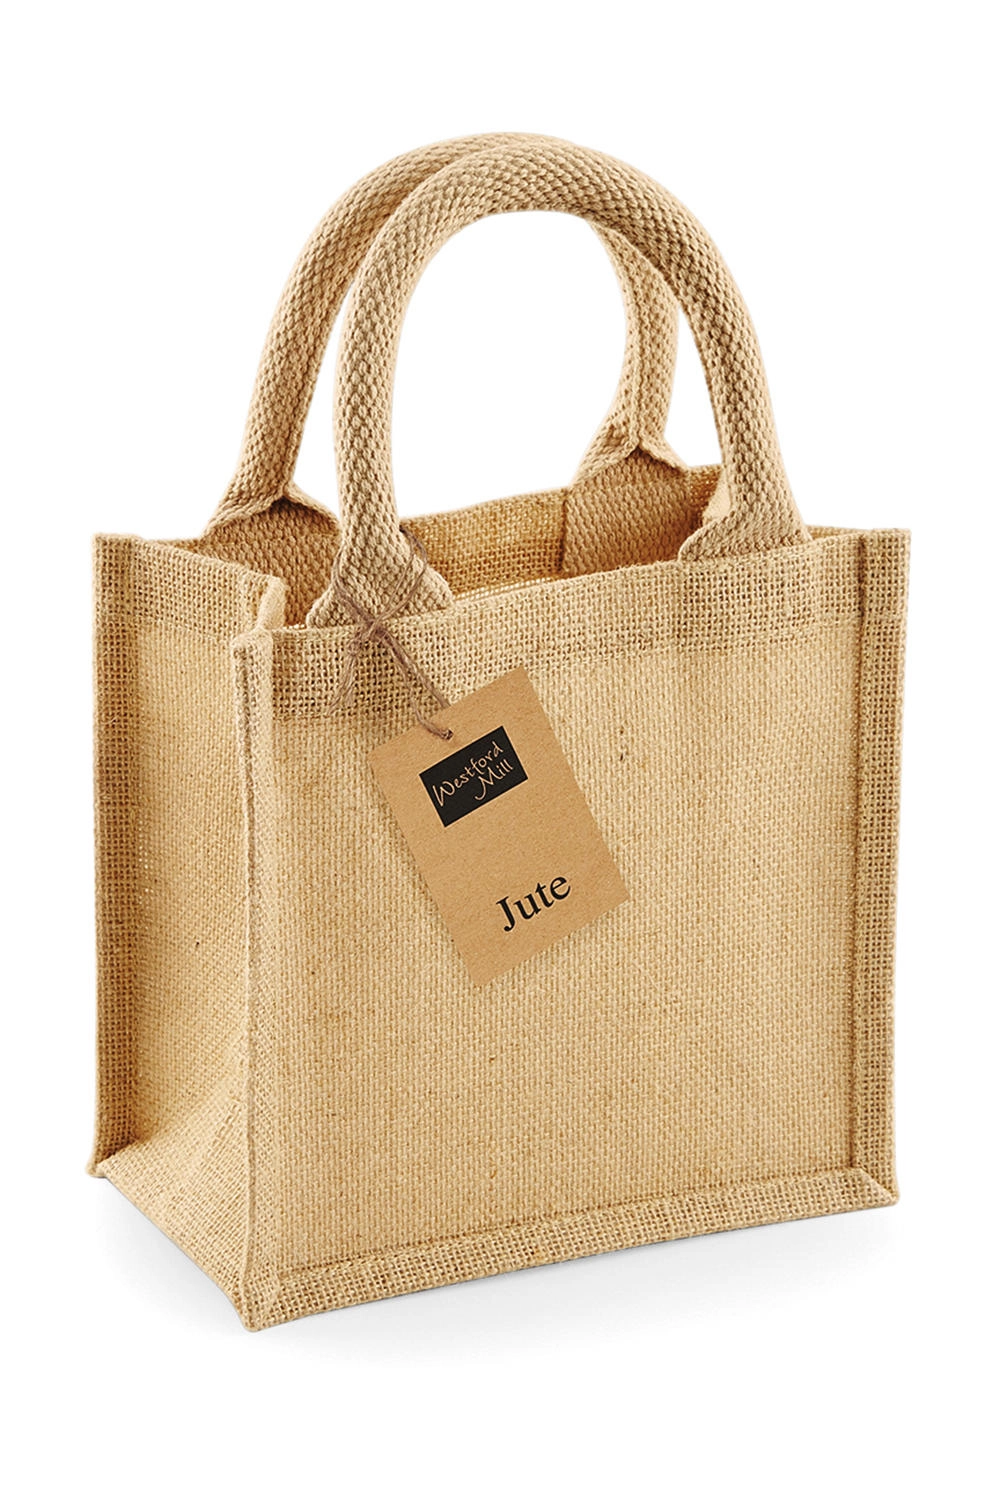 Jute Petite Gift Bag zum Besticken und Bedrucken in der Farbe Natural mit Ihren Logo, Schriftzug oder Motiv.